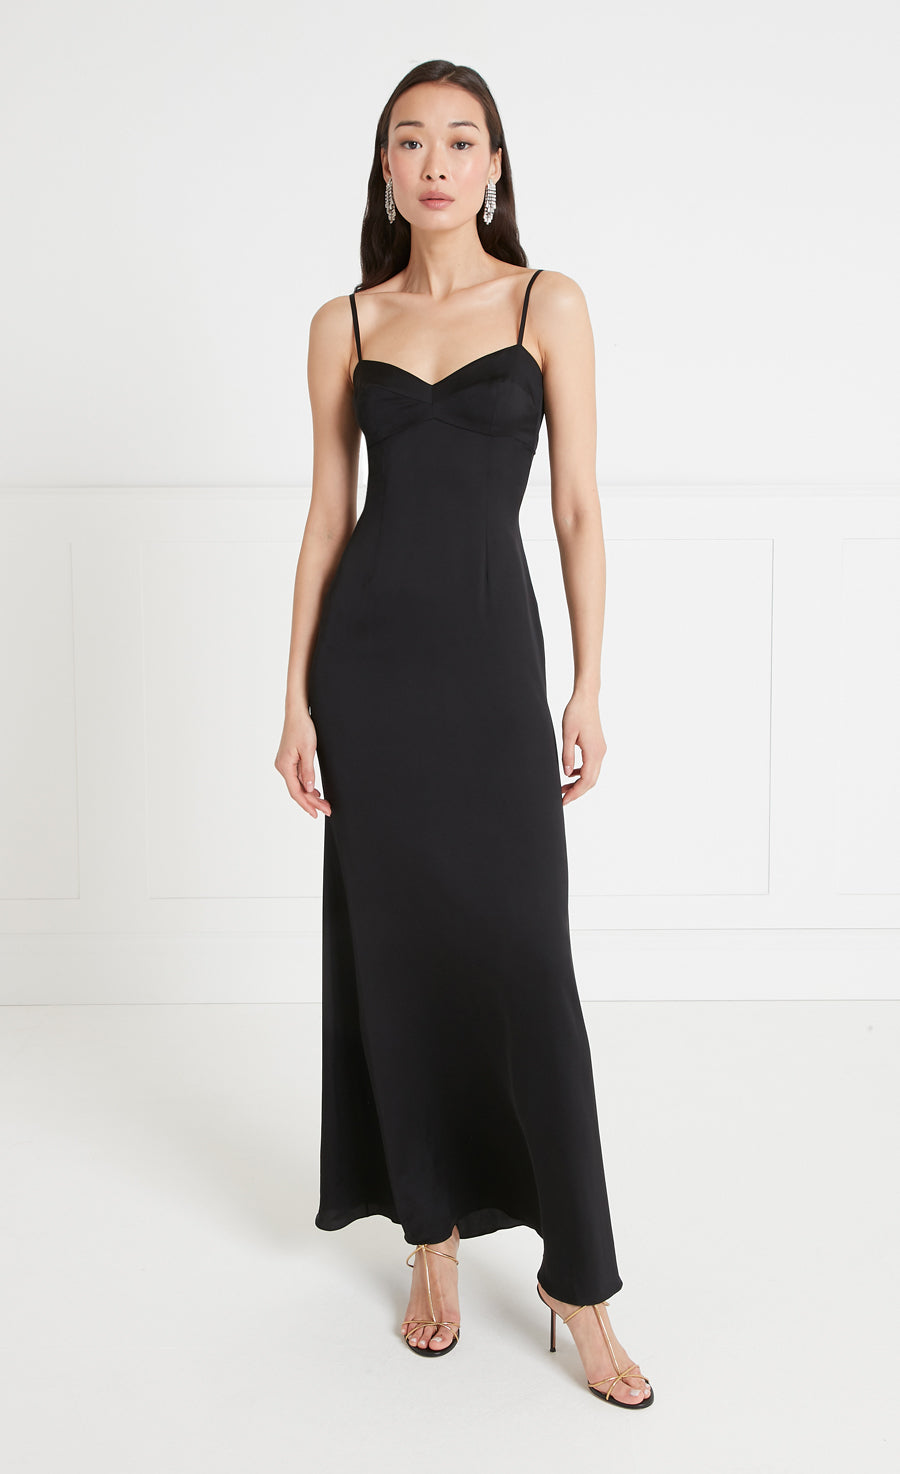 Black Slip Dresses, Buy Black Slip Dress Online New Zealand